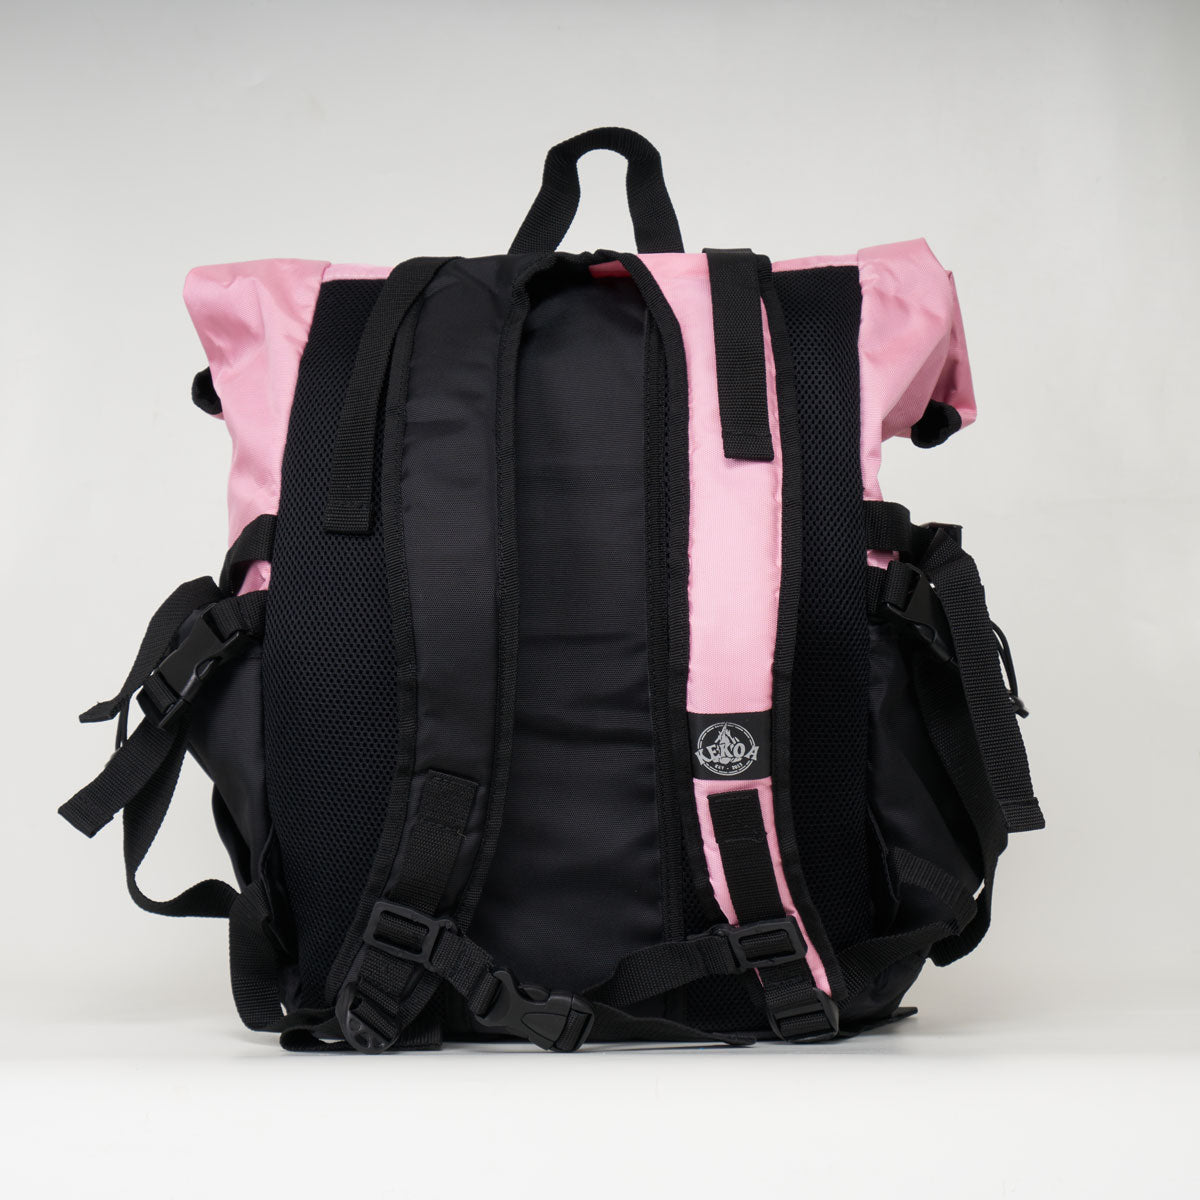 Kekoa Skate Backpack - Black/Pink